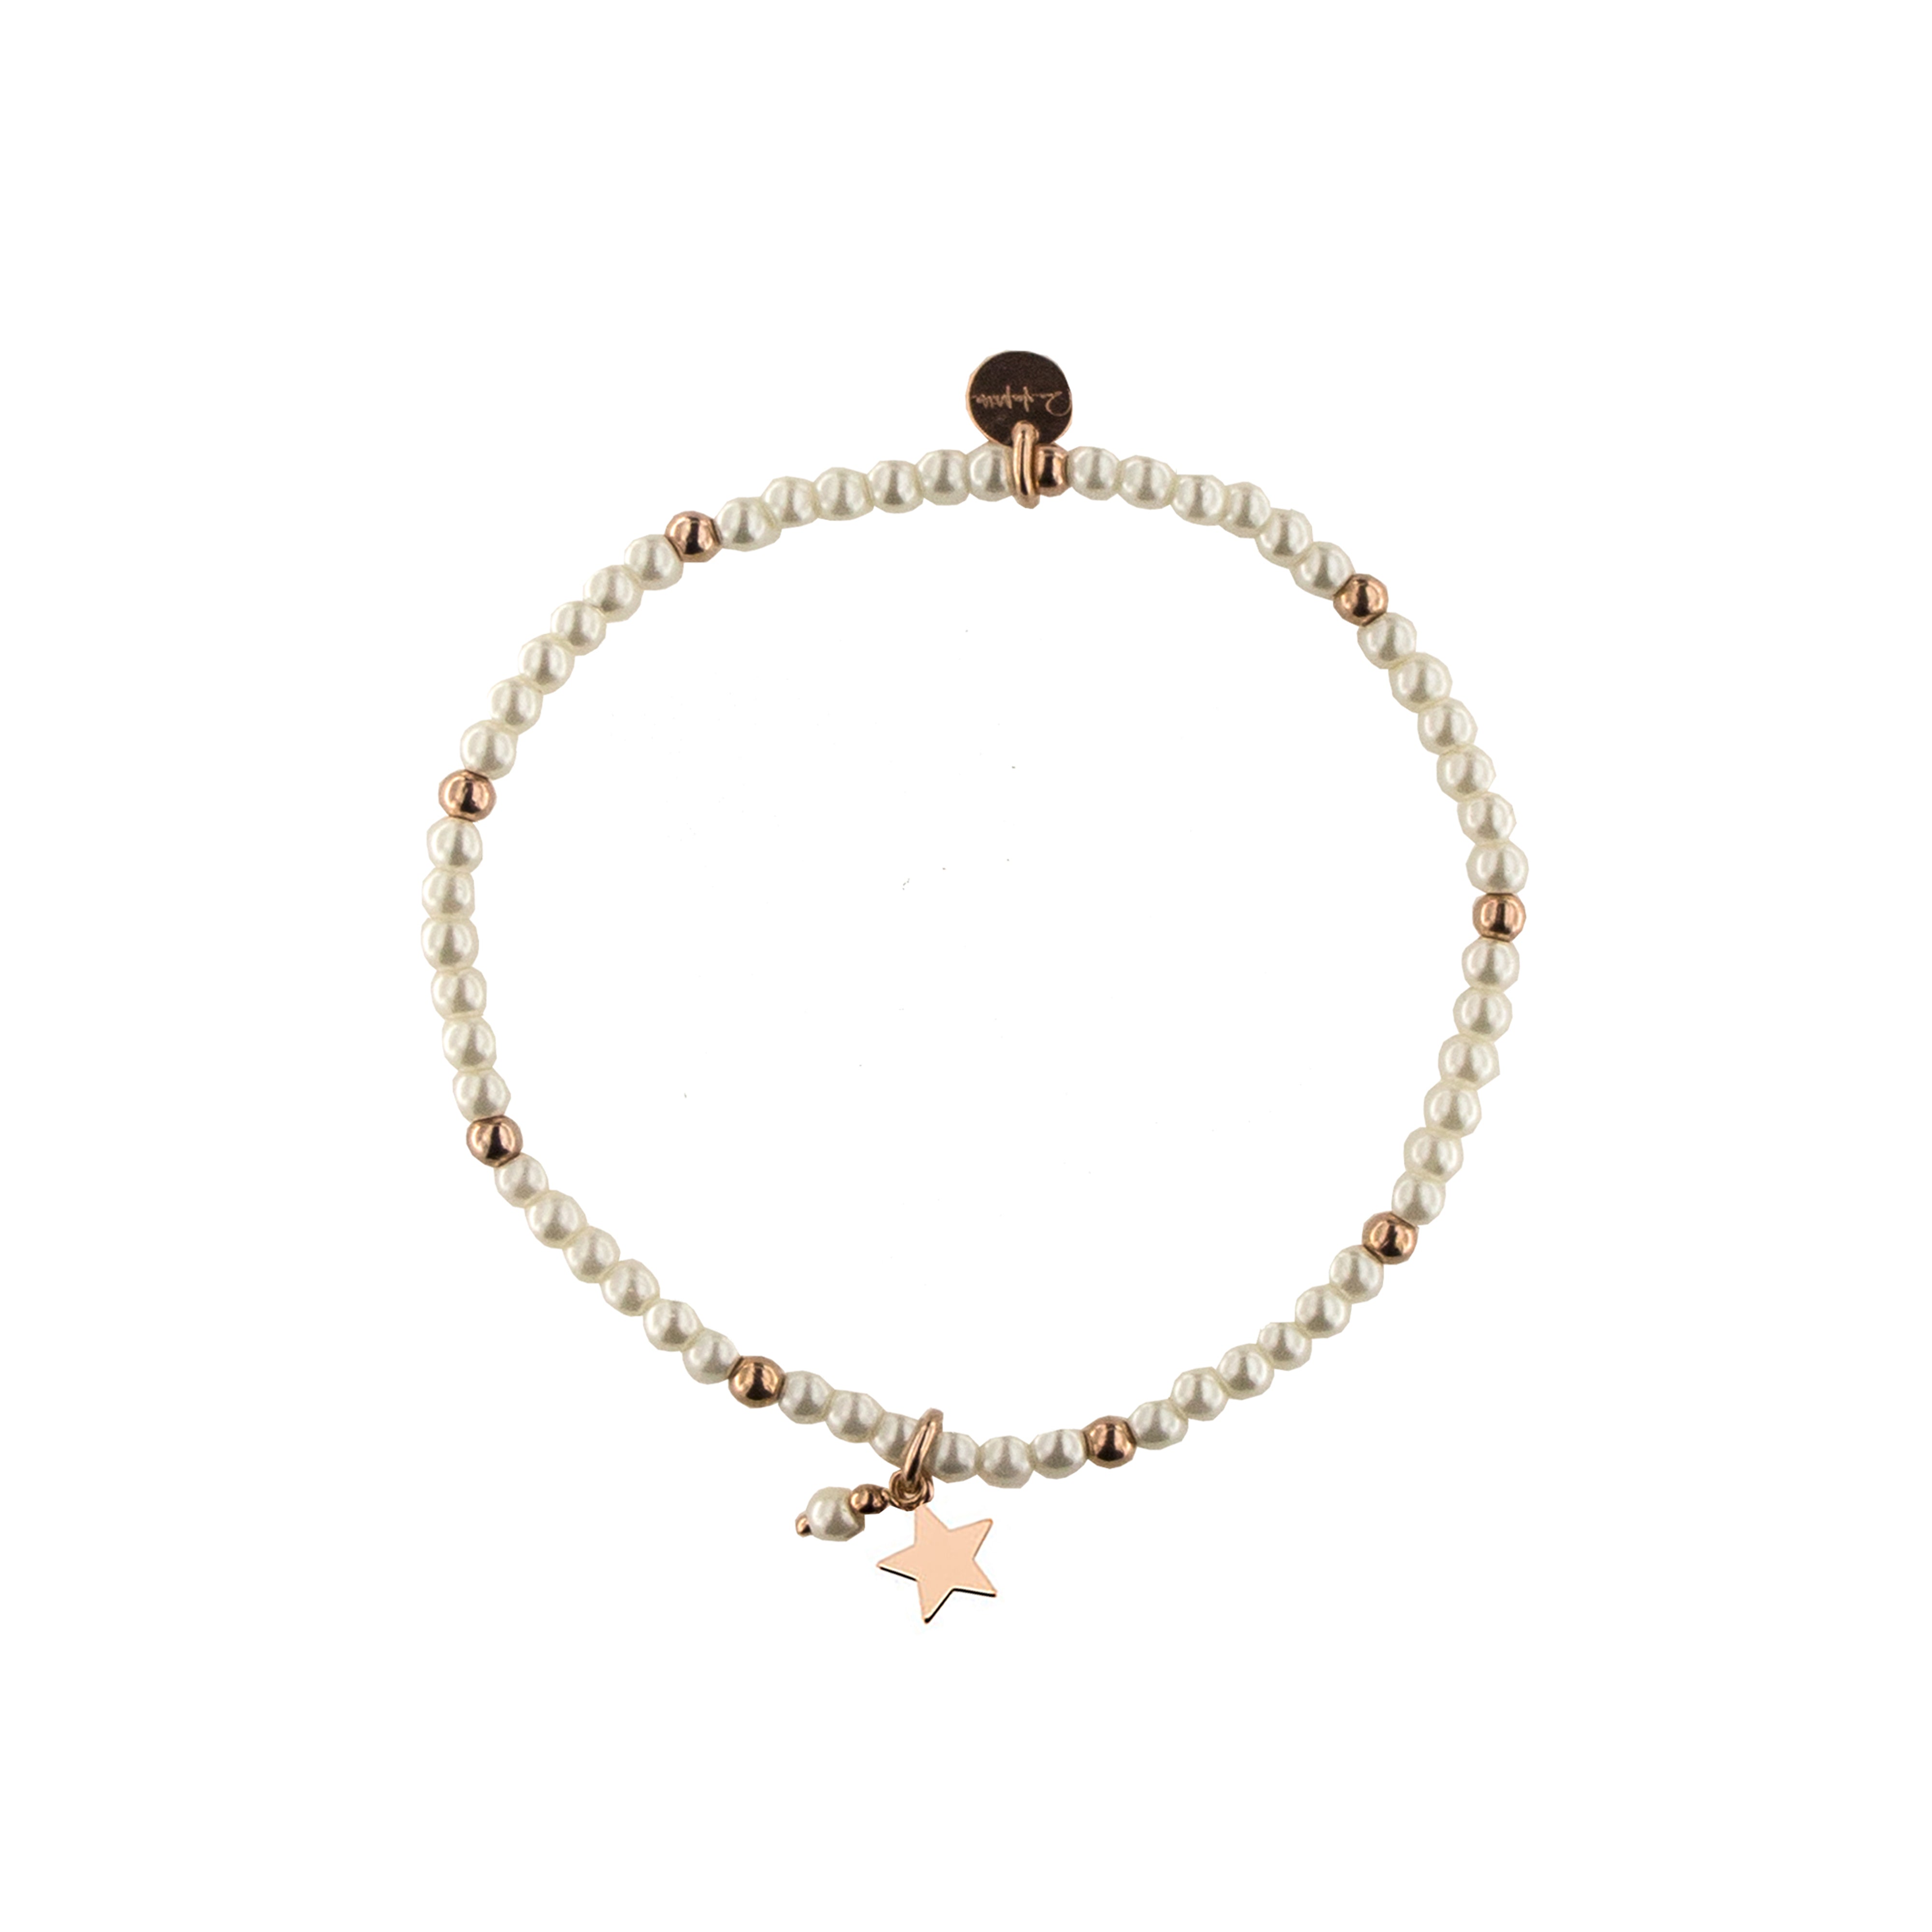 Bracelets - Elastic bracelet with pearls and balls - STAR - 1 | Rue des Mille